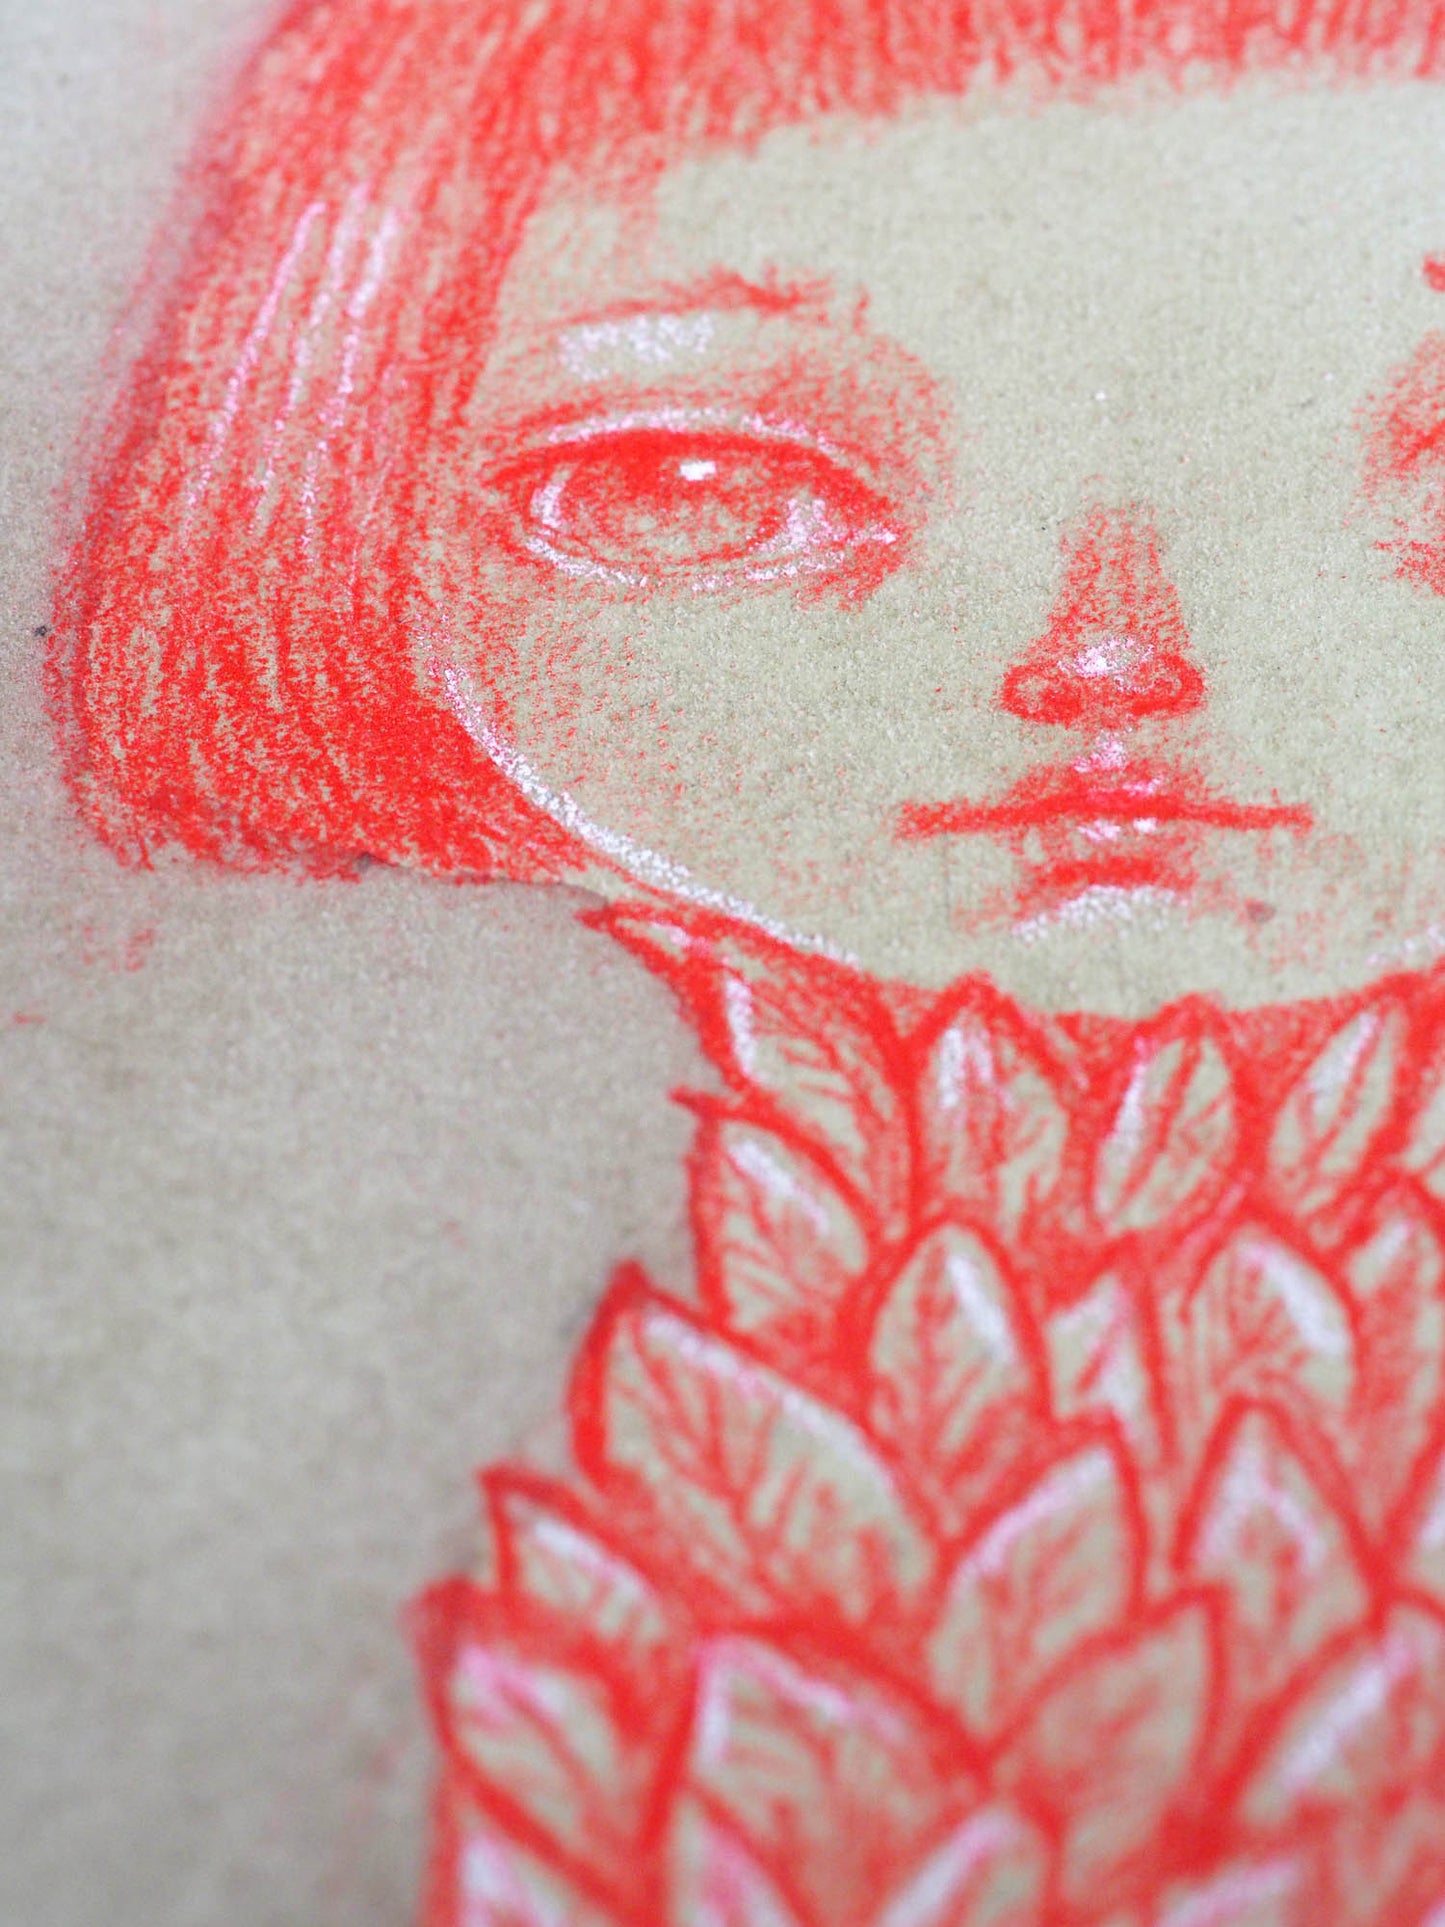 THE PLANT - Red pencil and watercolor surreal illustration by Danita, Original Art by Danita Art